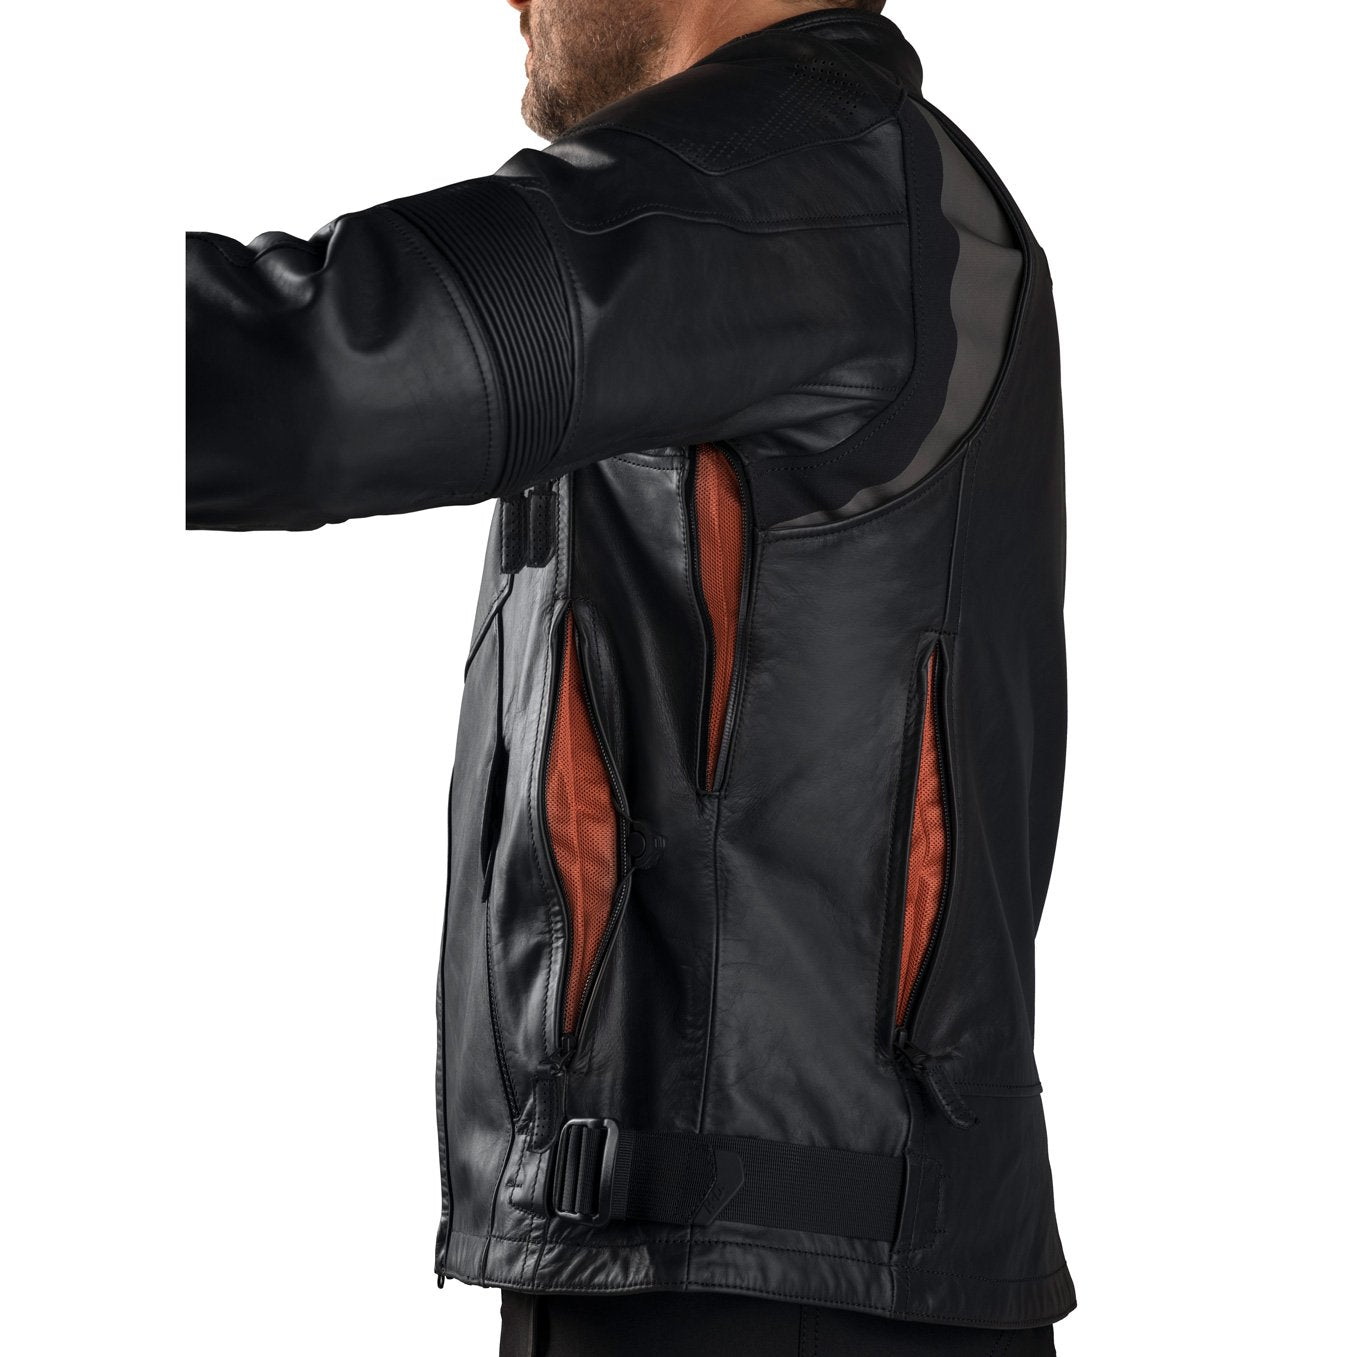 Mens FXRG Leather Jacket- Medium